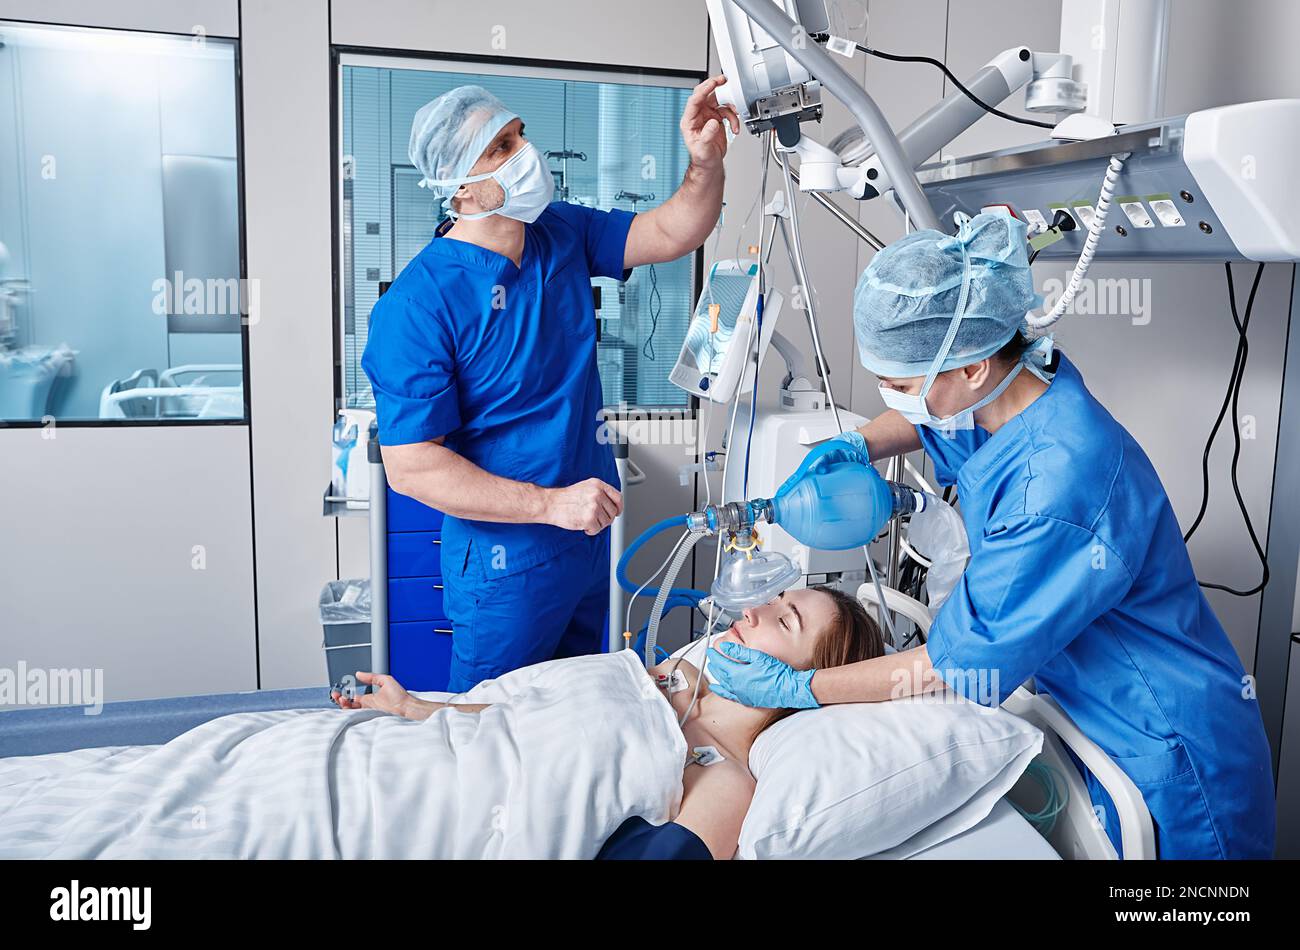 Infirmière et médecin utilisant un respirateur médical sur une patiente pendant la réanimation cardiopulmonaire en USI et la surveillance de la santé. RCP en USI Banque D'Images